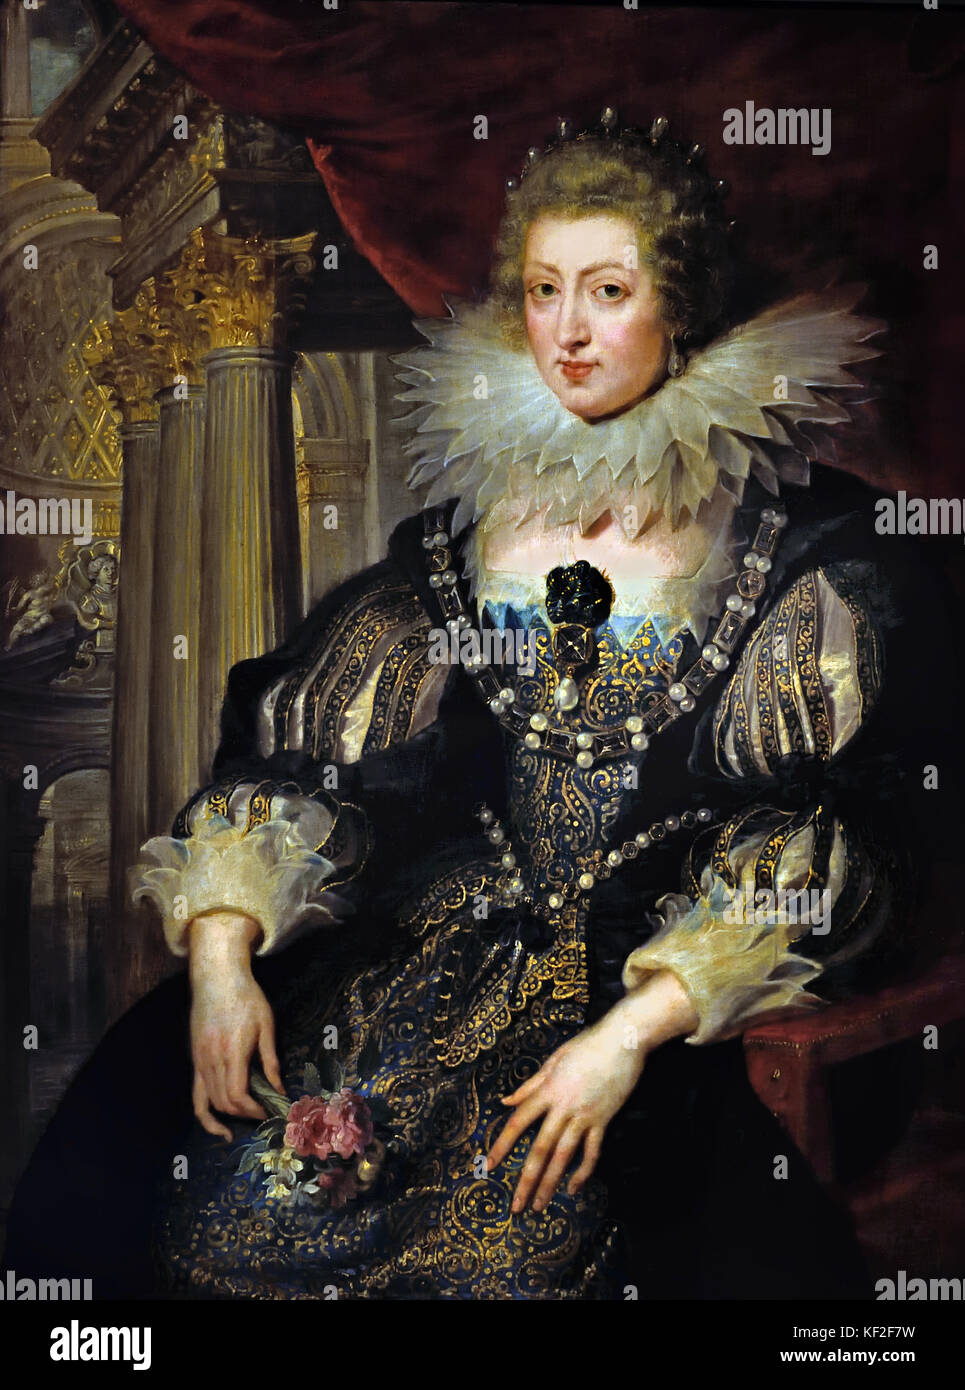 Anne d'Autriche Épouse de Roi Louis XIII de France - Ana de Austria, esposa del rey Louis XIII de Francia 1625 Peter Paul Rubens (1577-1640), pintor barroco Flamenco en la tradición .Amberes, Amberes, Bélgica, Foto de stock